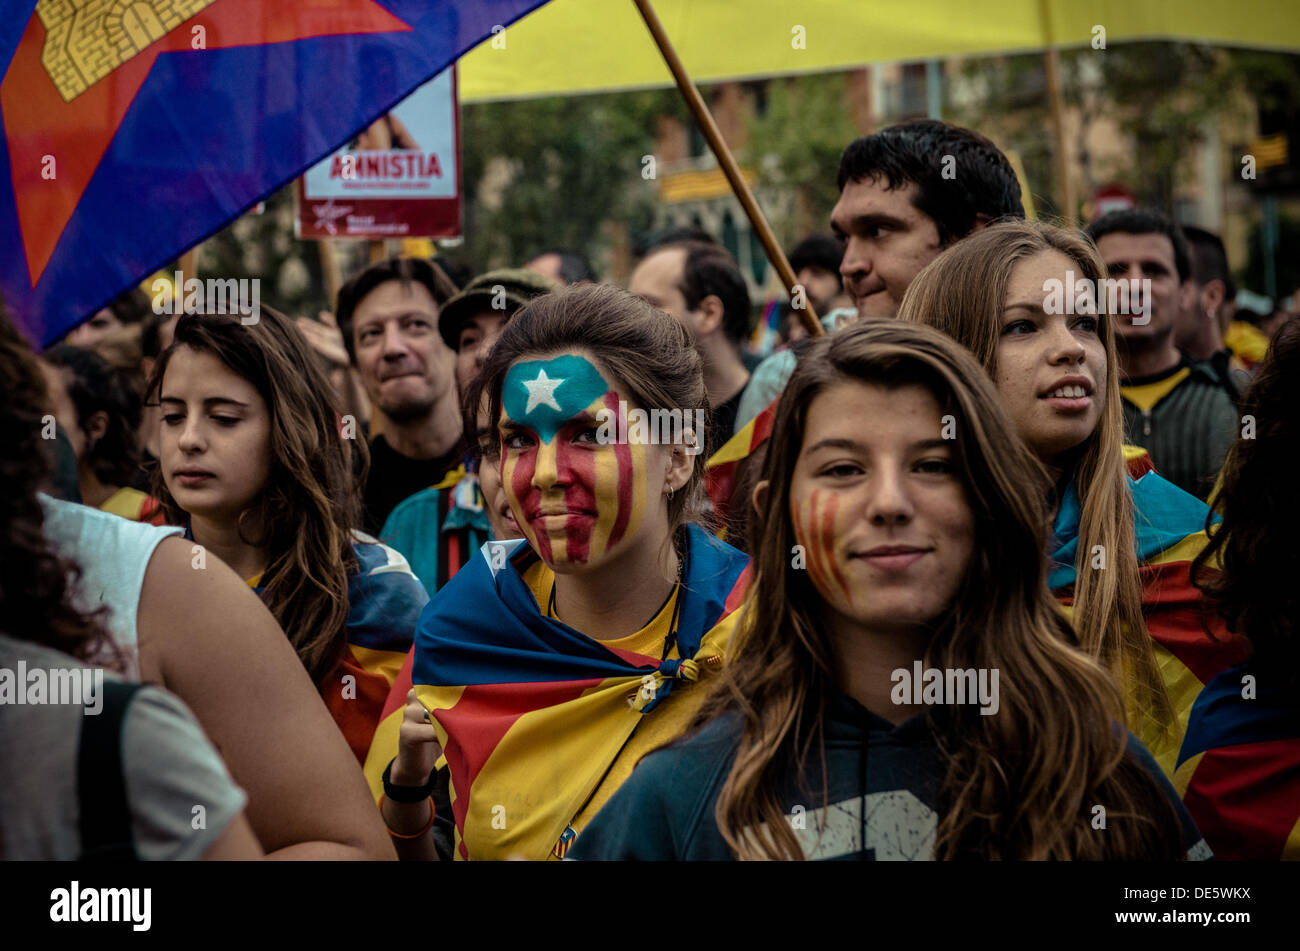 Barcelone, Espagne. Septembre 11th, 2013 : les manifestants avec des visages peints montrant l'indépendance catalane drapeaux prendre part à une marche dans Barcelone sur la Catalogne, la fête nationale © matthi/Alamy Live News Banque D'Images